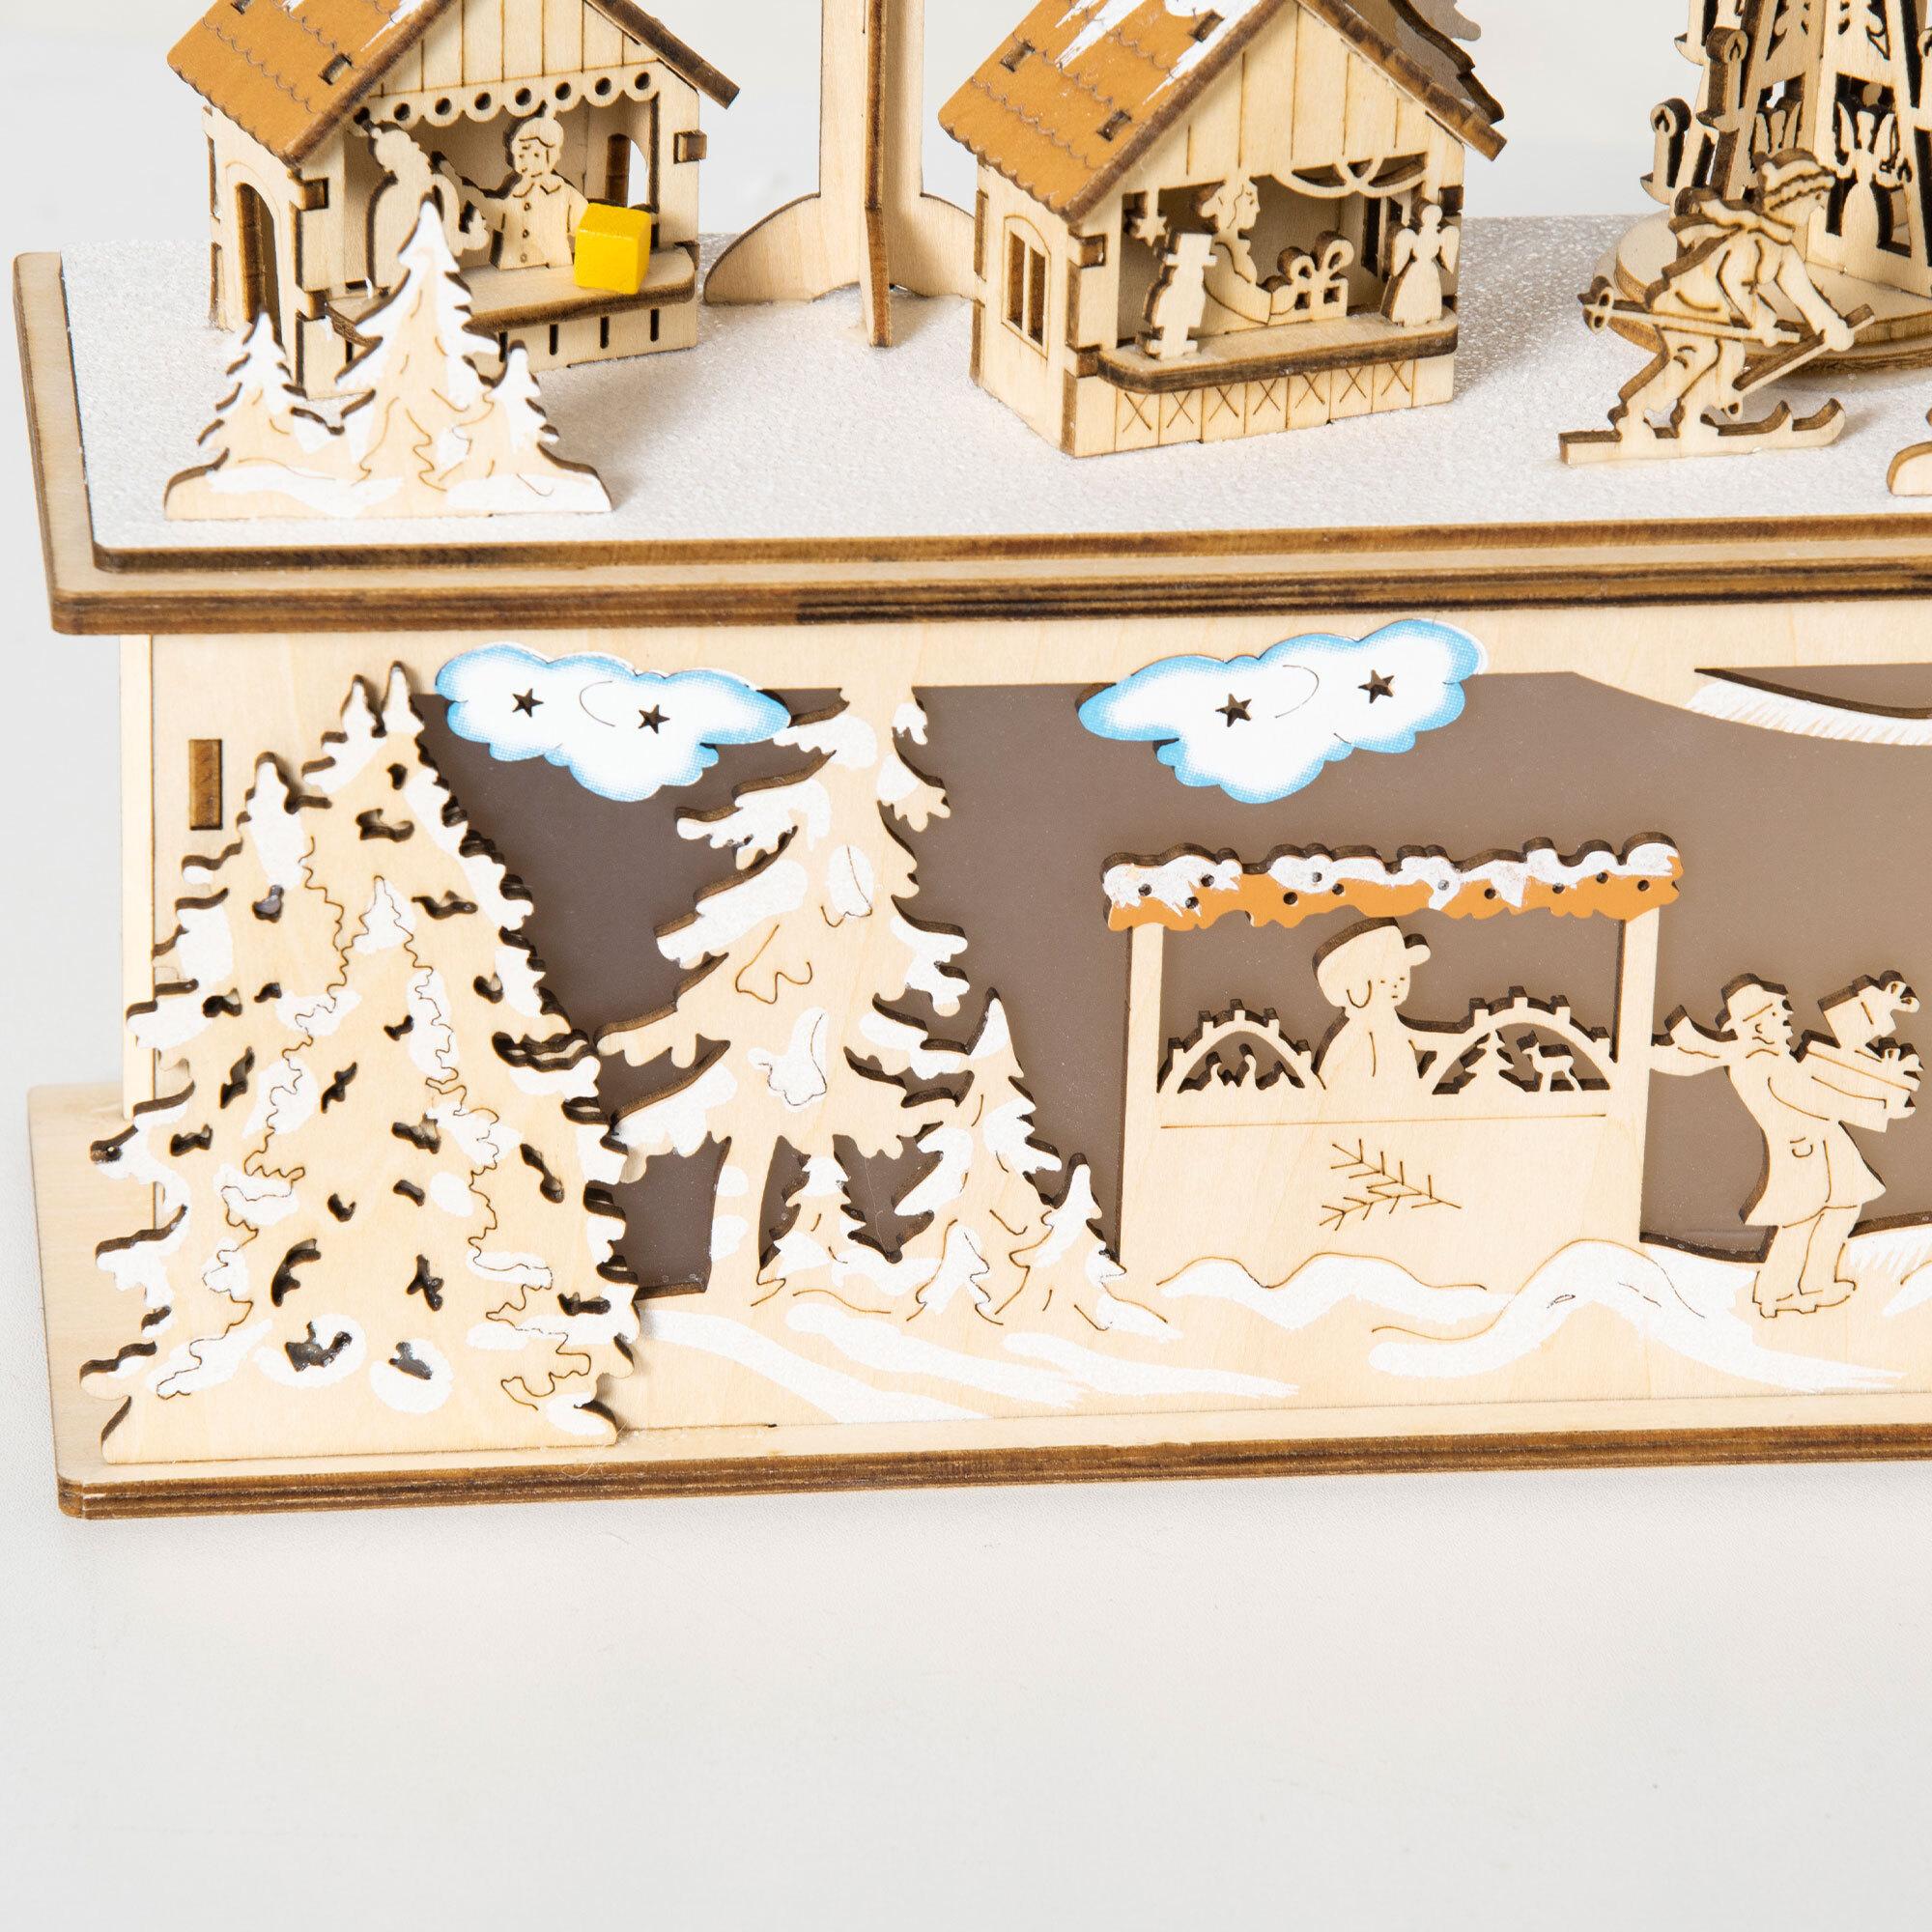 Village de Noël lumineux avec église, maisons, personnages